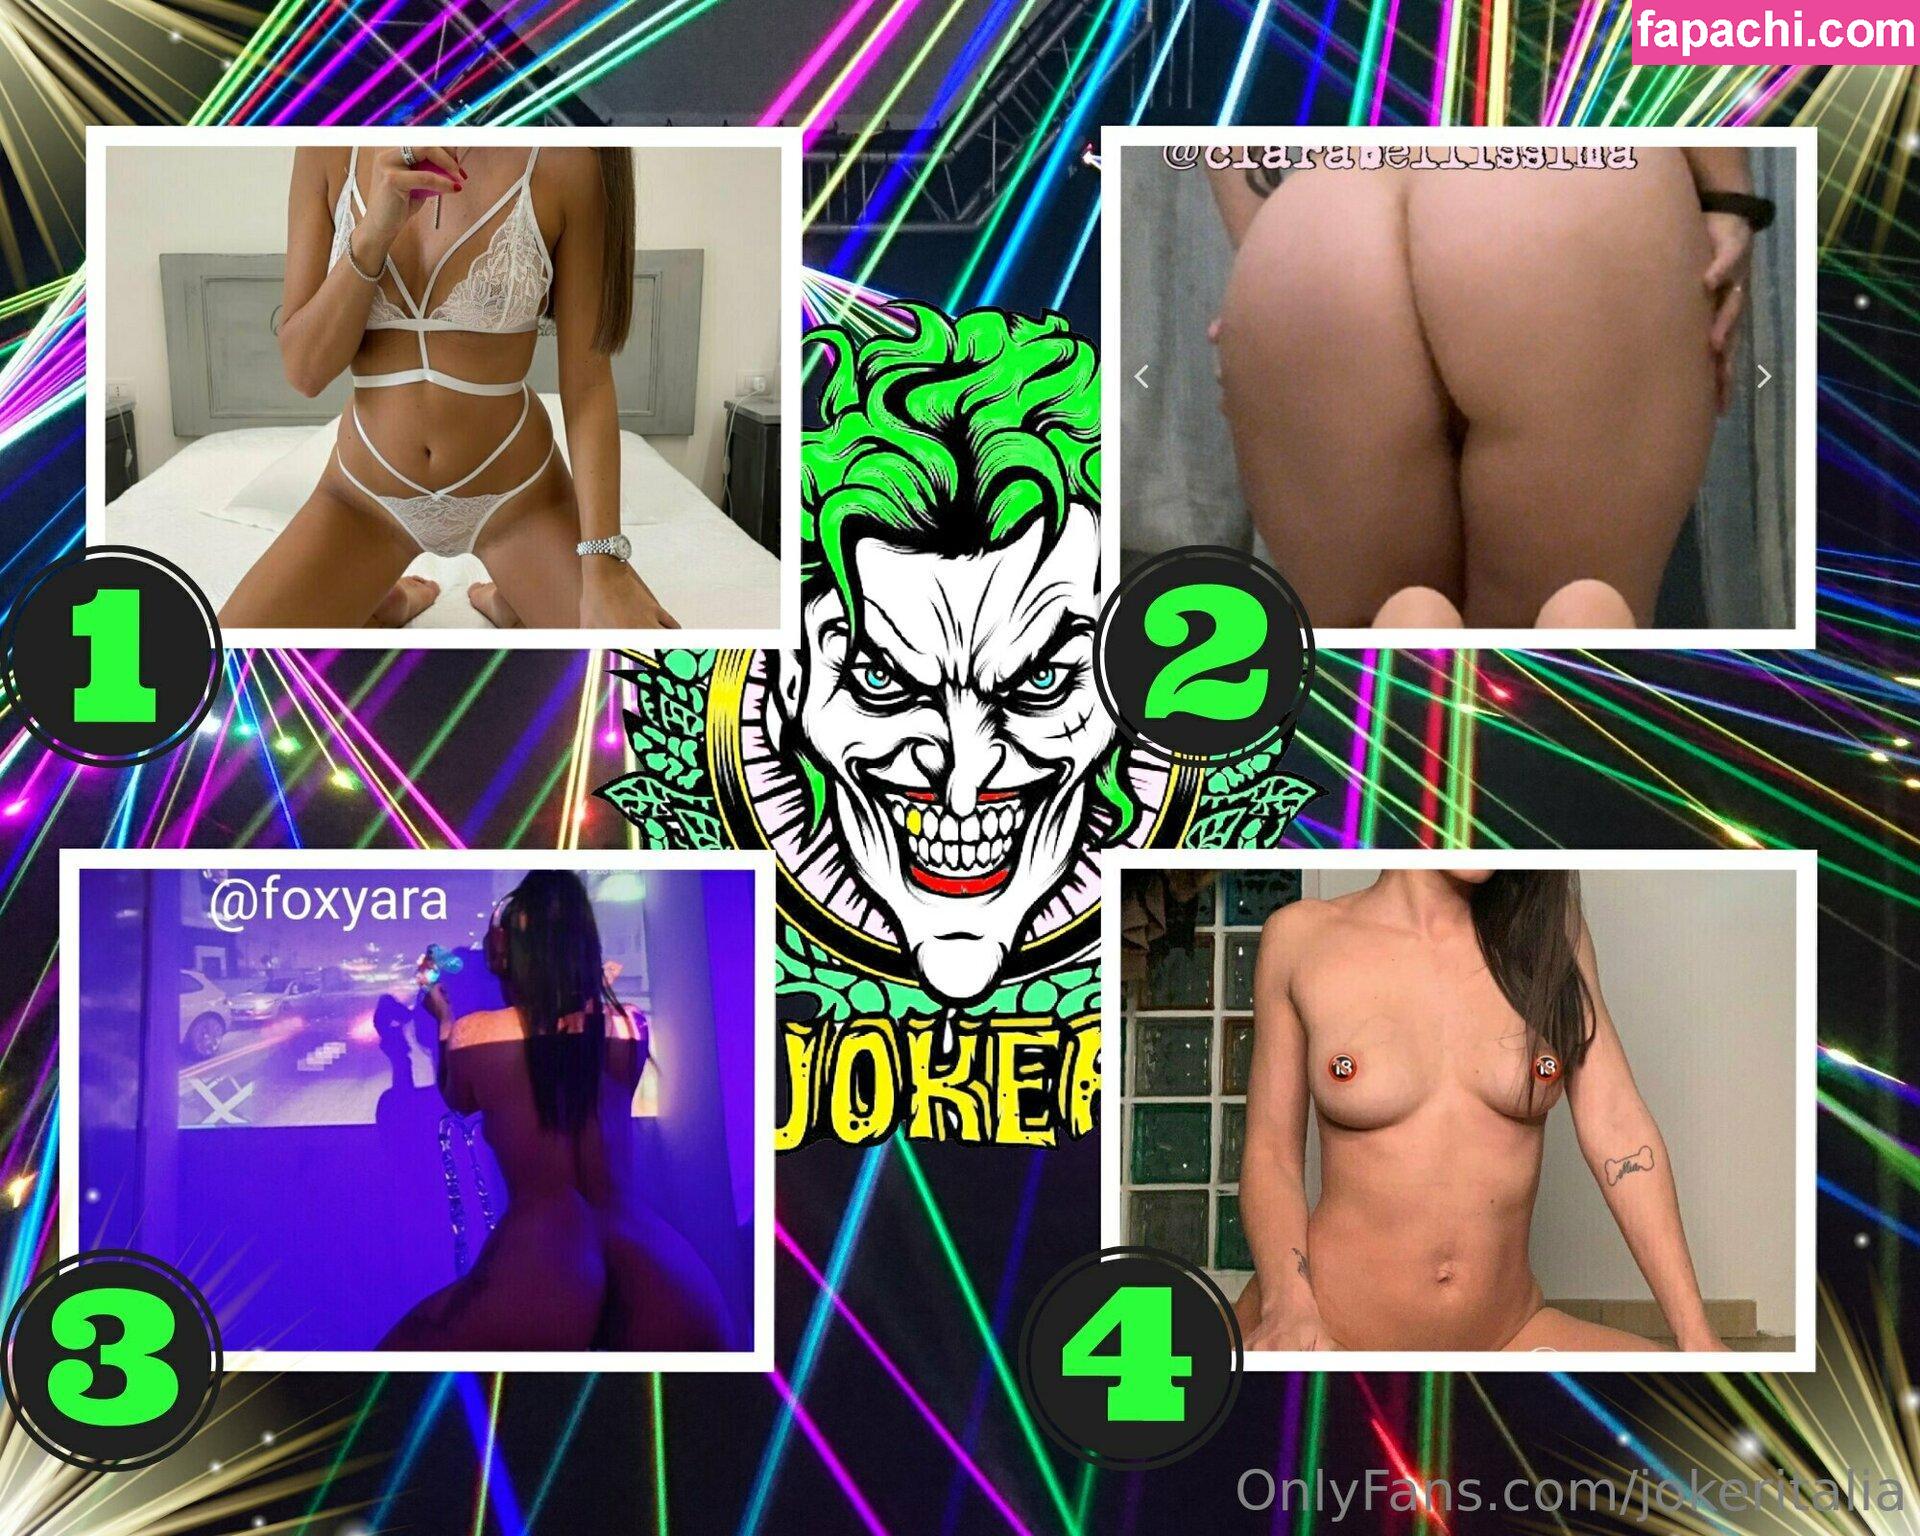 jokeritalia / jokeritalia_ofc leaked nude photo #0384 from OnlyFans/Patreon